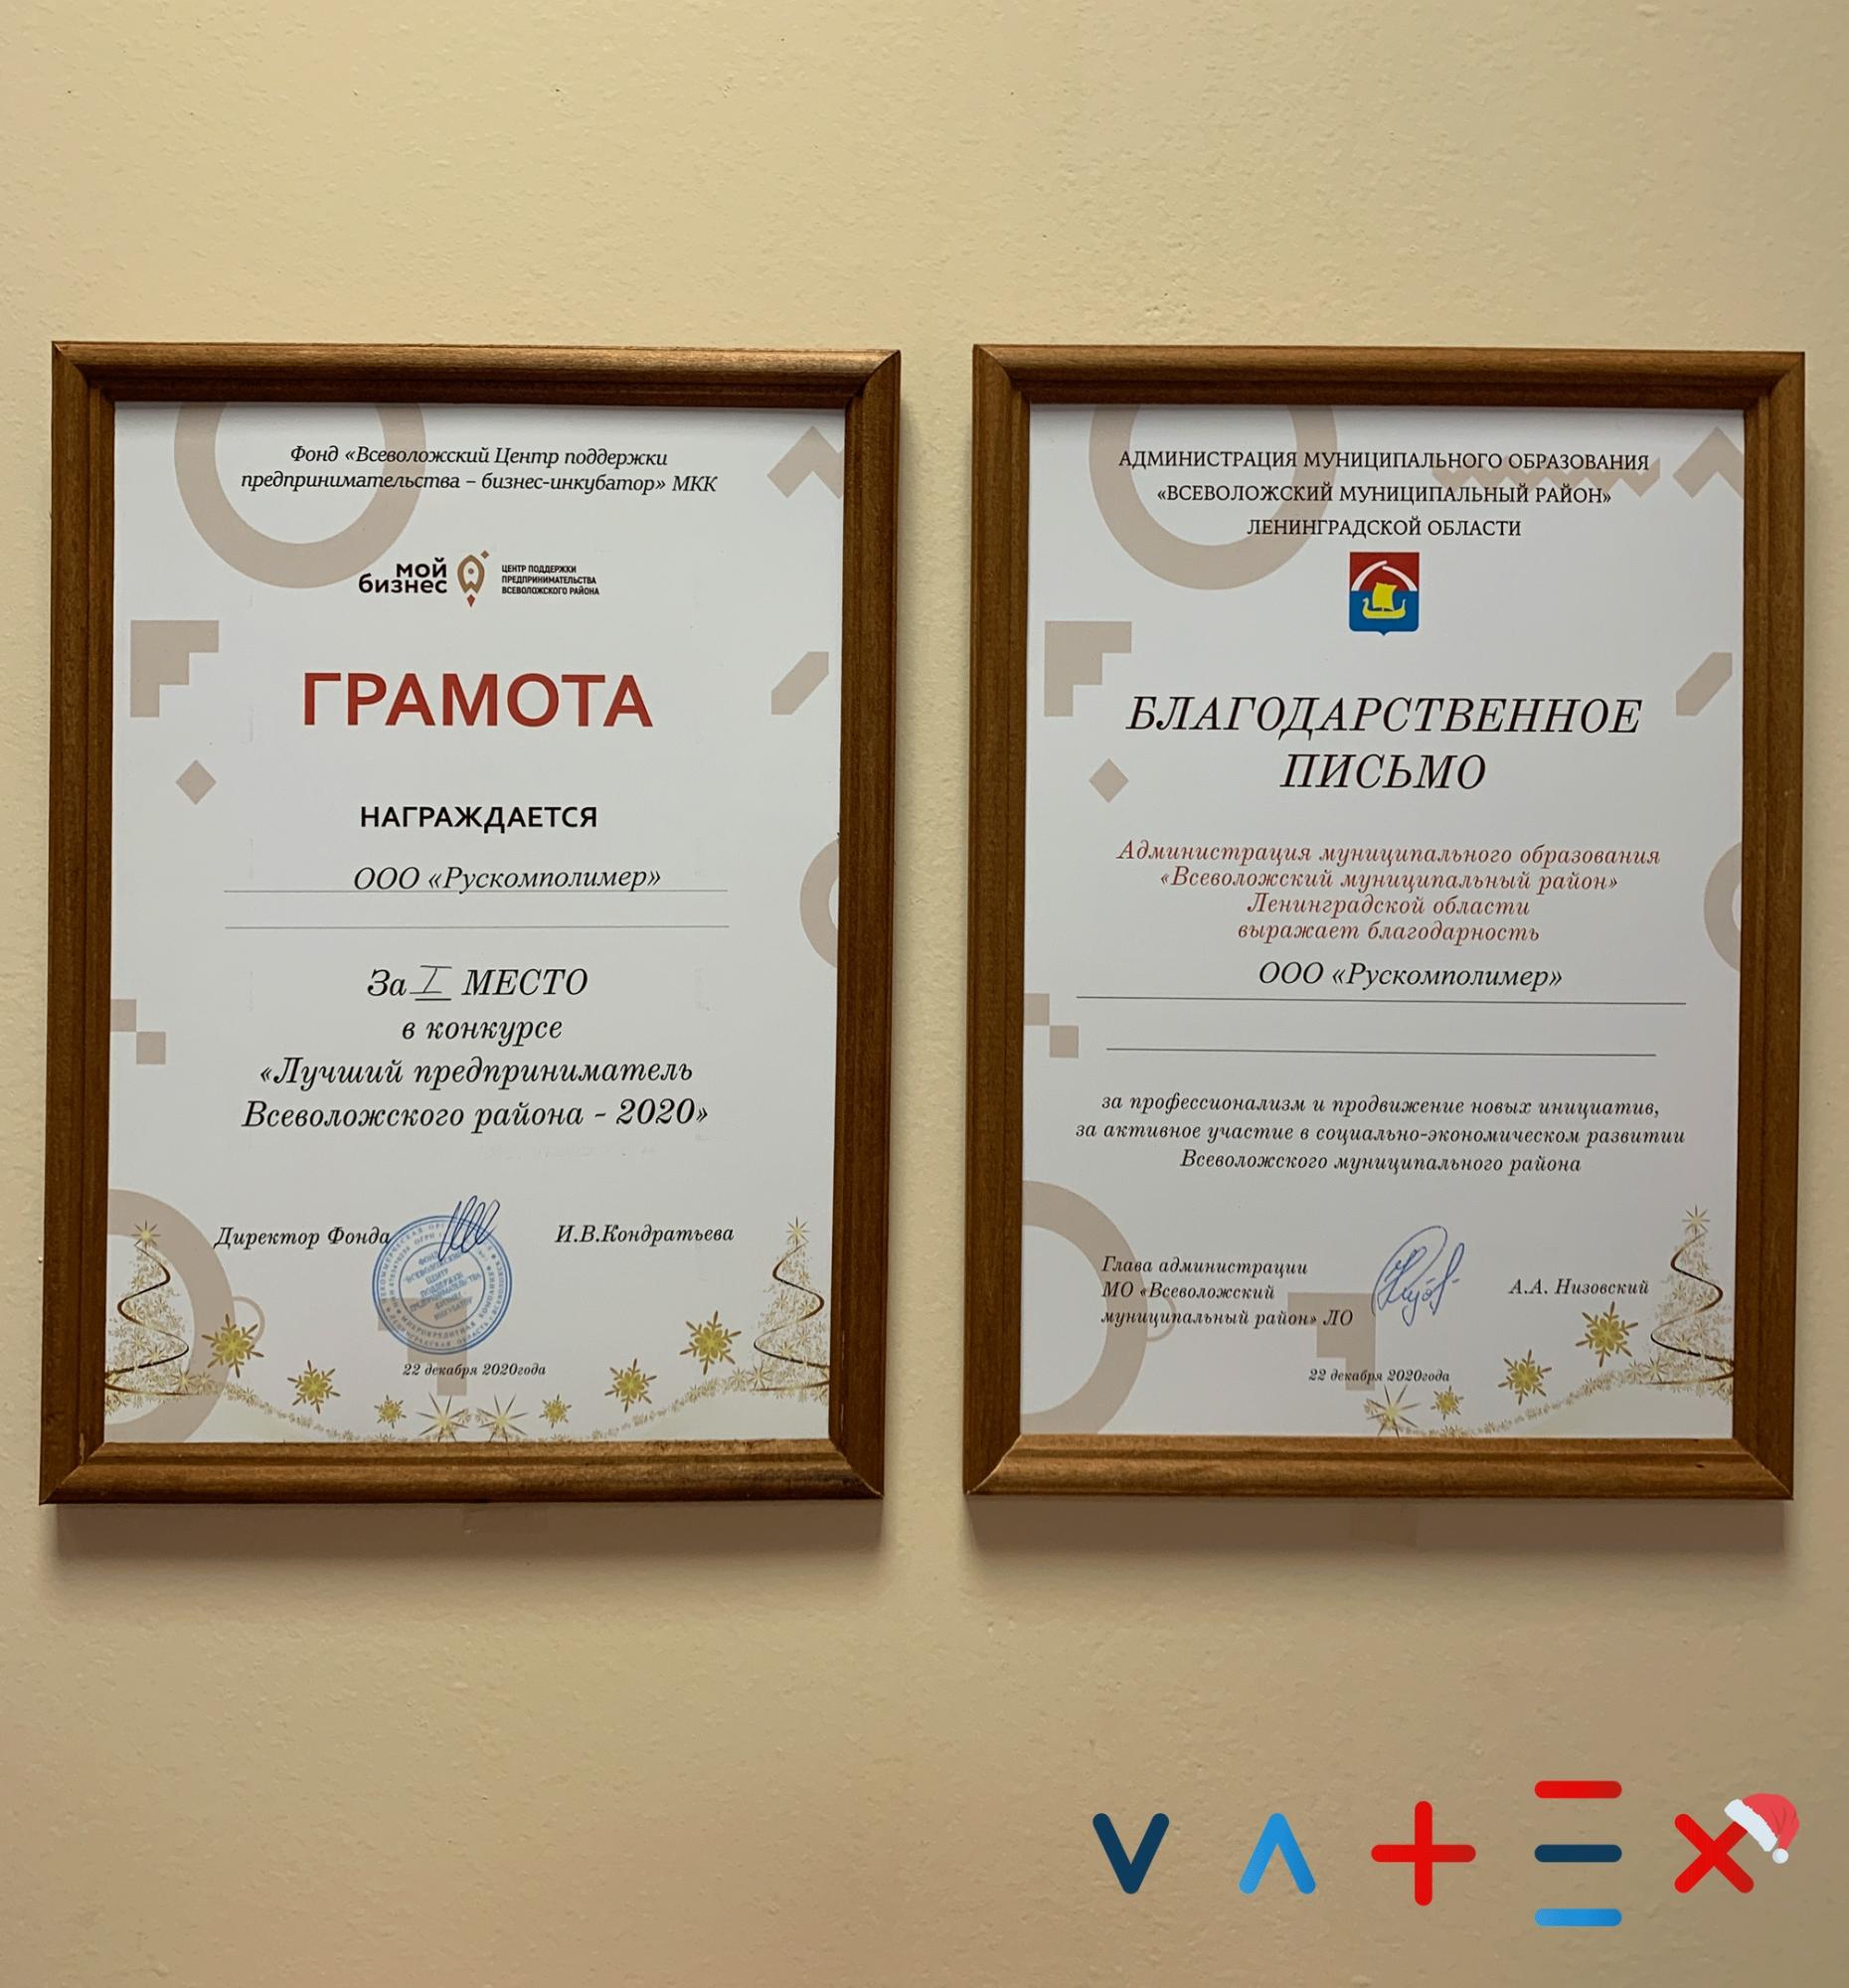 Производственная компания VATEX заняла 1 место в конкурсе «Лучший предприниматель Всеволожского района-2020»